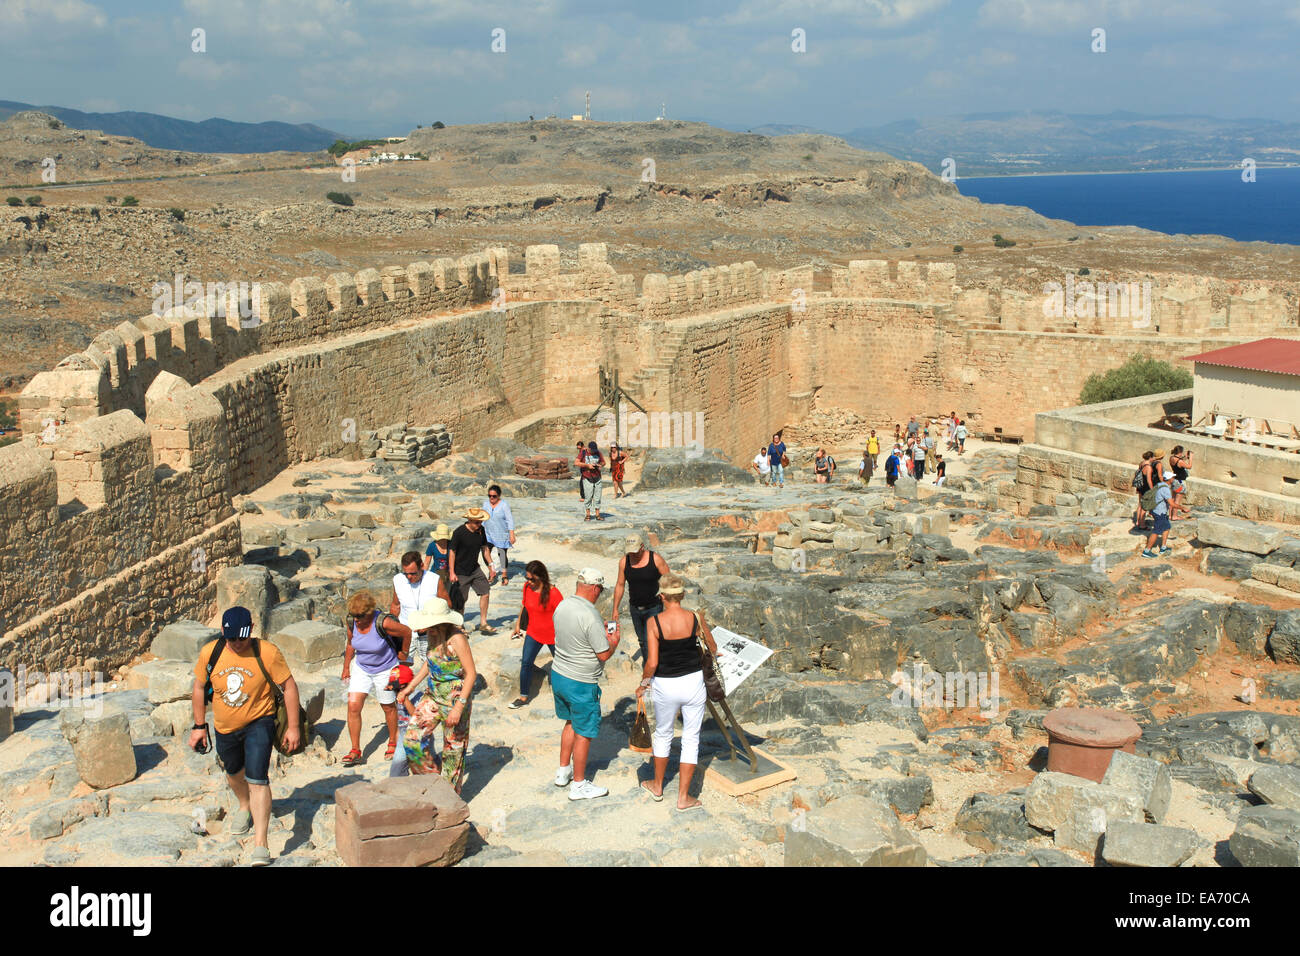 Les touristes en haut de l'ancienne Acropole de Lindos, ruines d'une citadelle naturelle qui a été fortifiée successivement par les Grecs, les Rom Banque D'Images